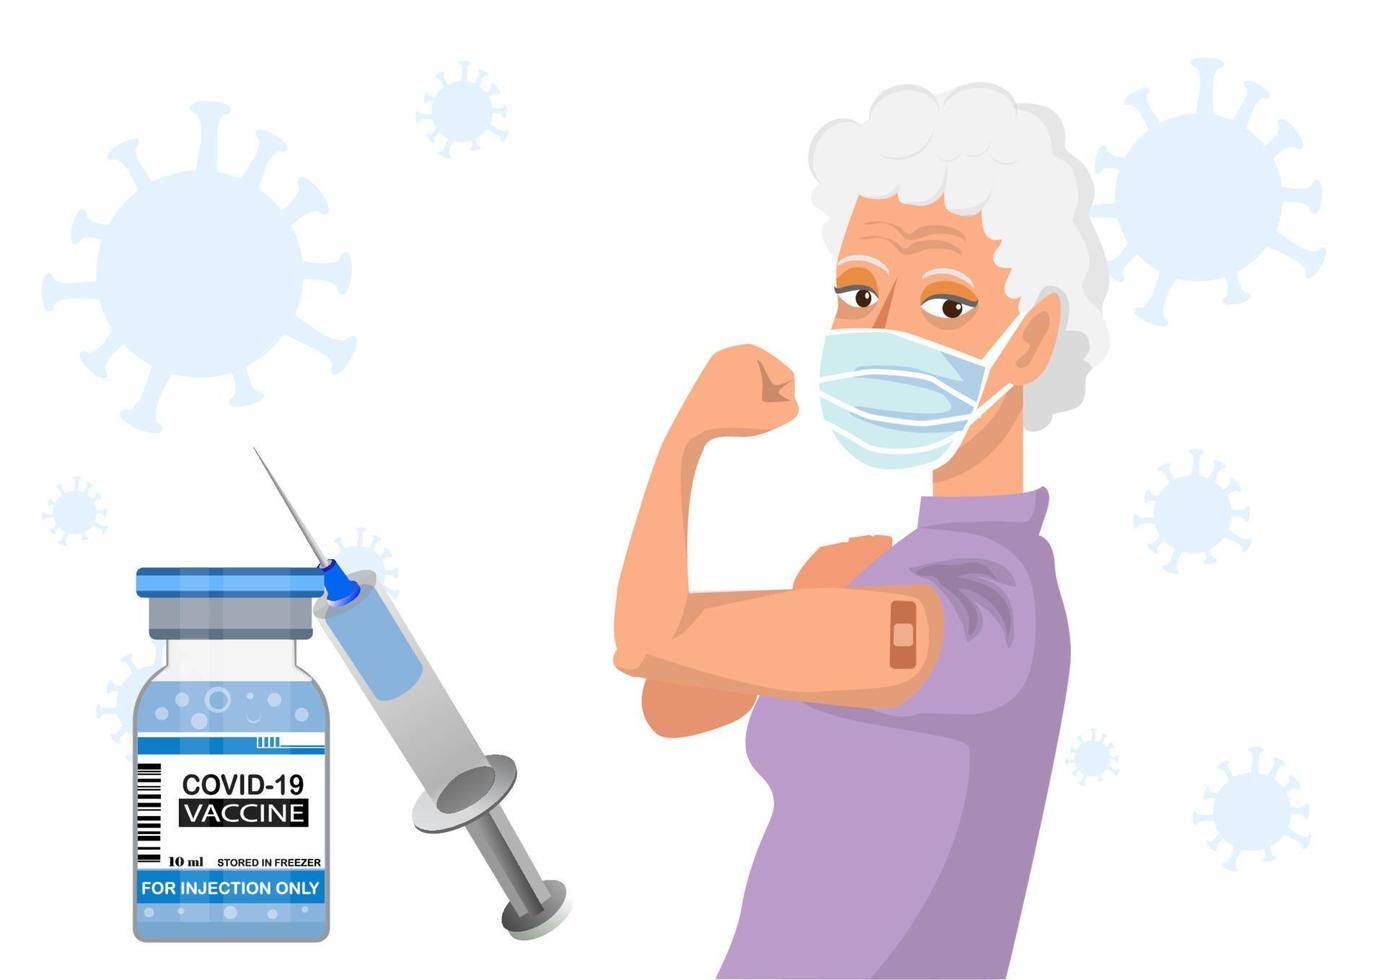 vieille femme montrant le bras de vaccination contre le coronavirus, distribuant le vaccin pour la population générale. vecteur d'illustration de dessin animé de style plat